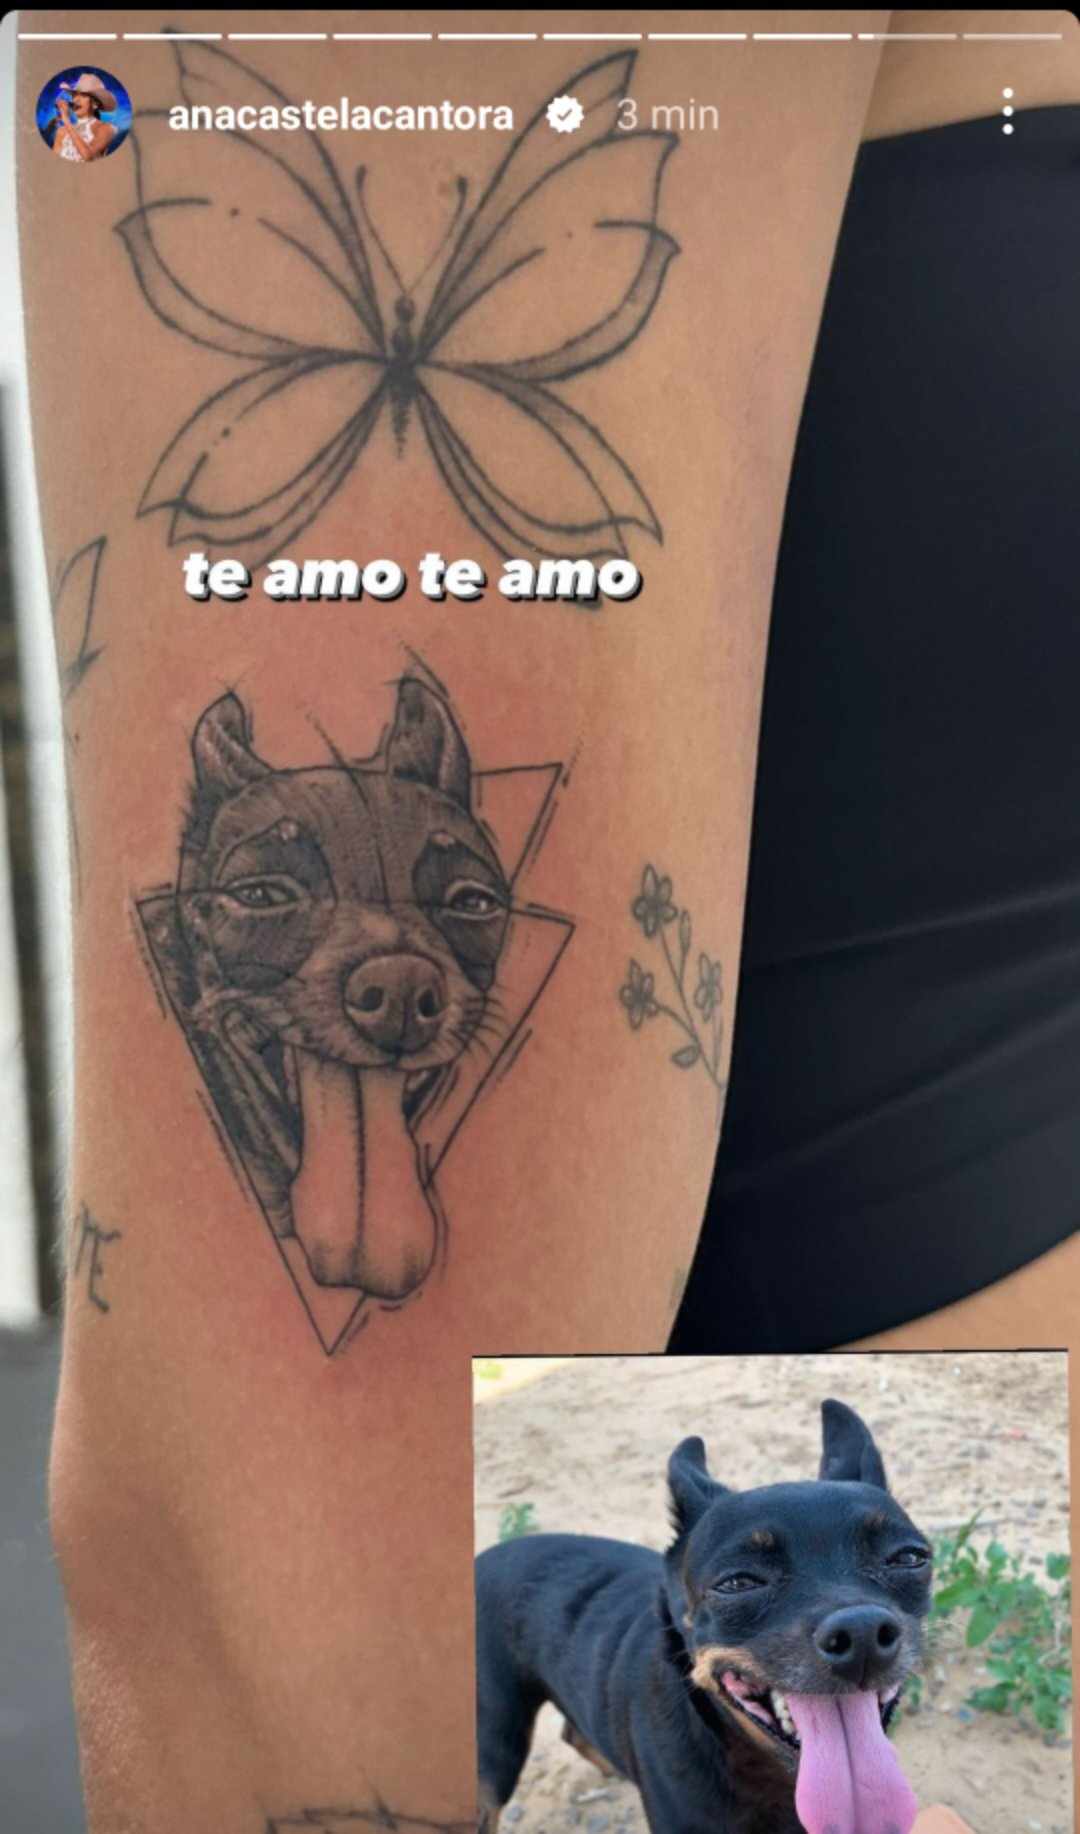 Ana Castela tatuagem